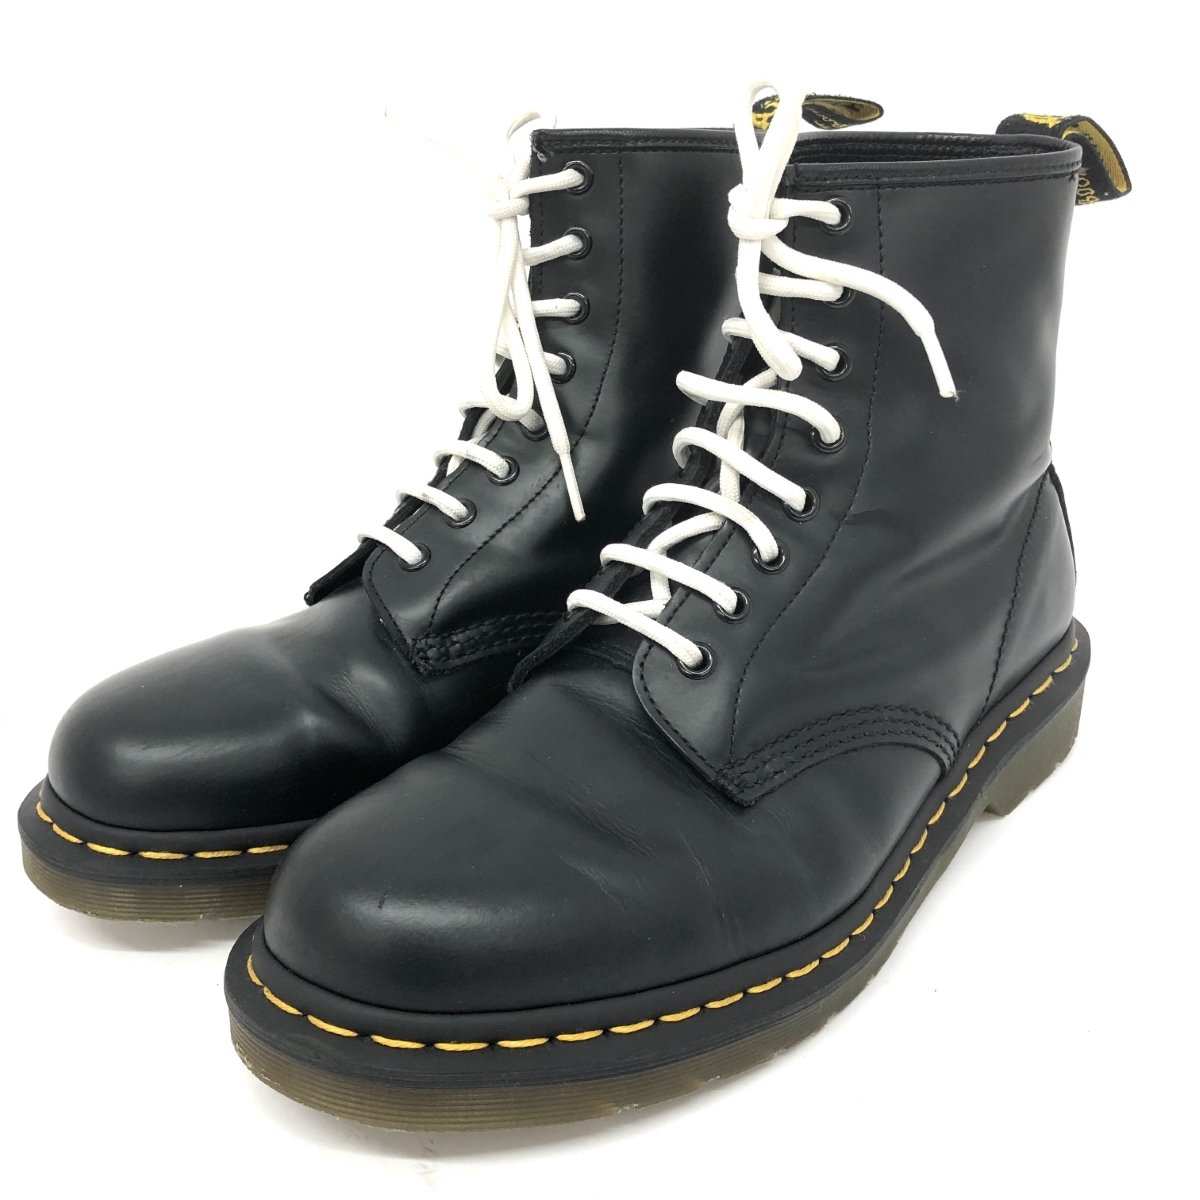 良好◆Dr.Martens ドクターマーチン 8ホール ブーツ UK8◆1460 ブラック メンズ 靴 シューズ boots ワークブーツ_画像1